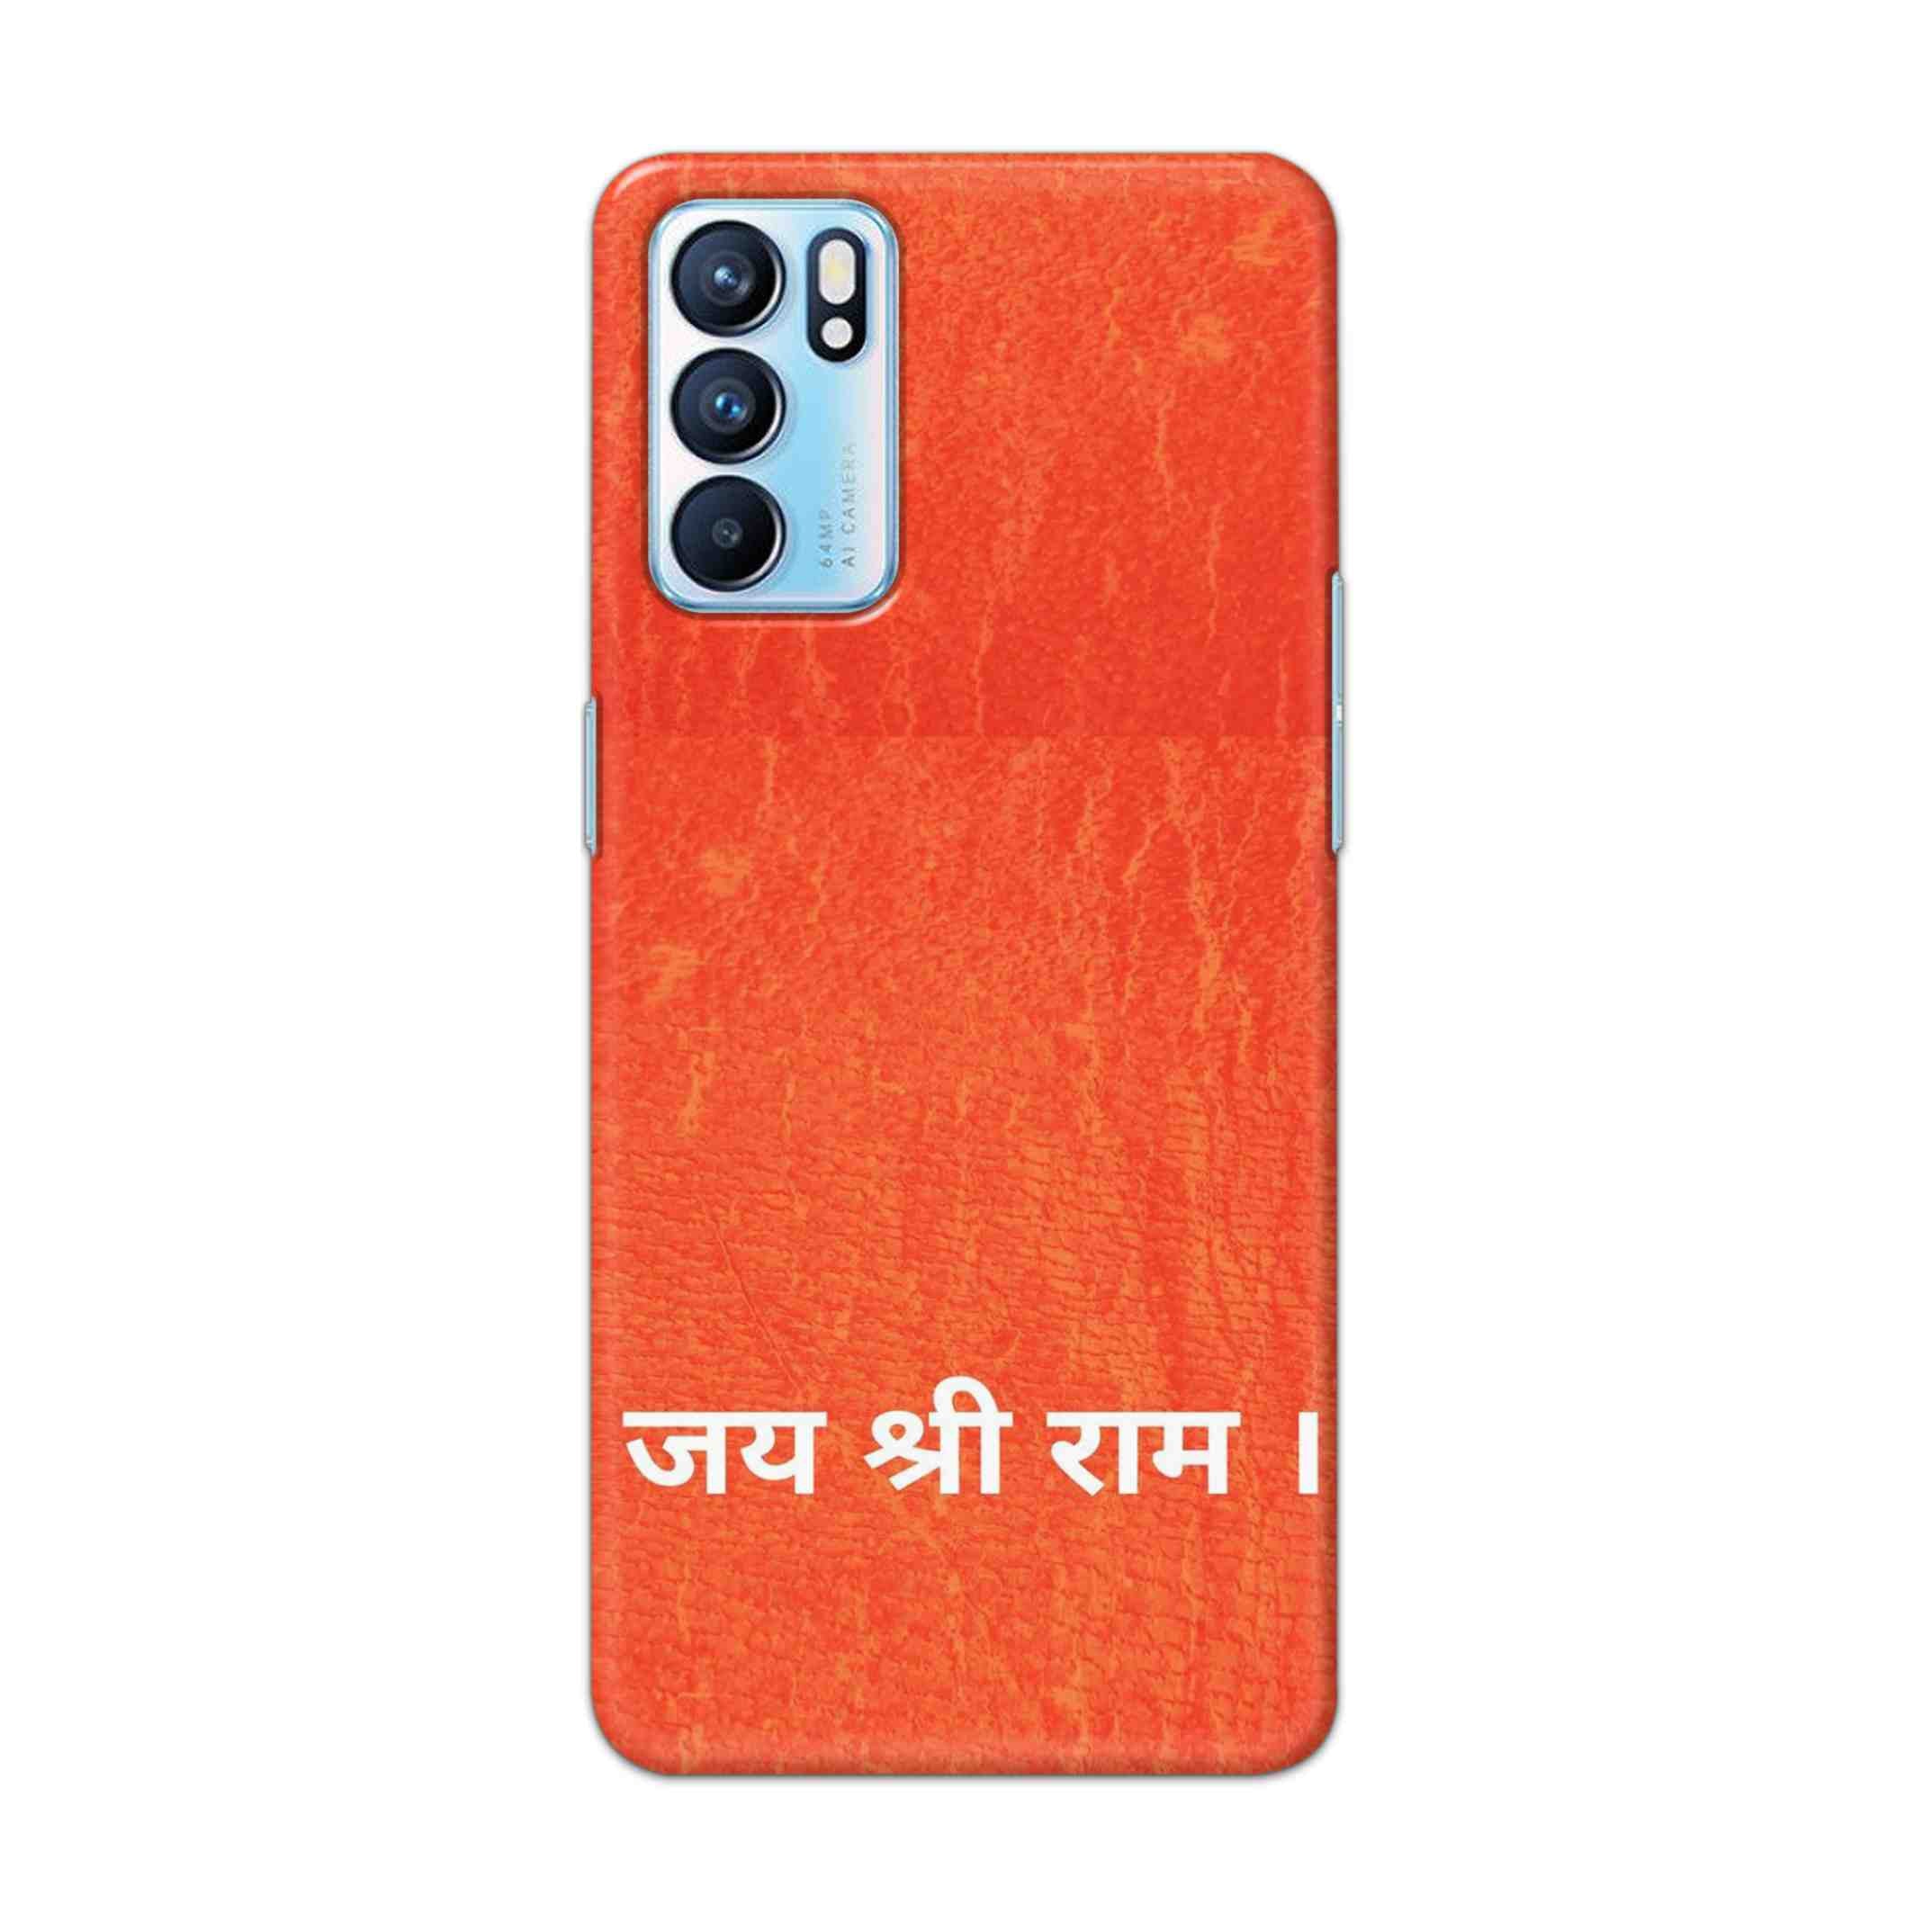 Buy Jai Shree Ram Hard Back Mobile Phone Case Cover For OPPO RENO 6 5G Online